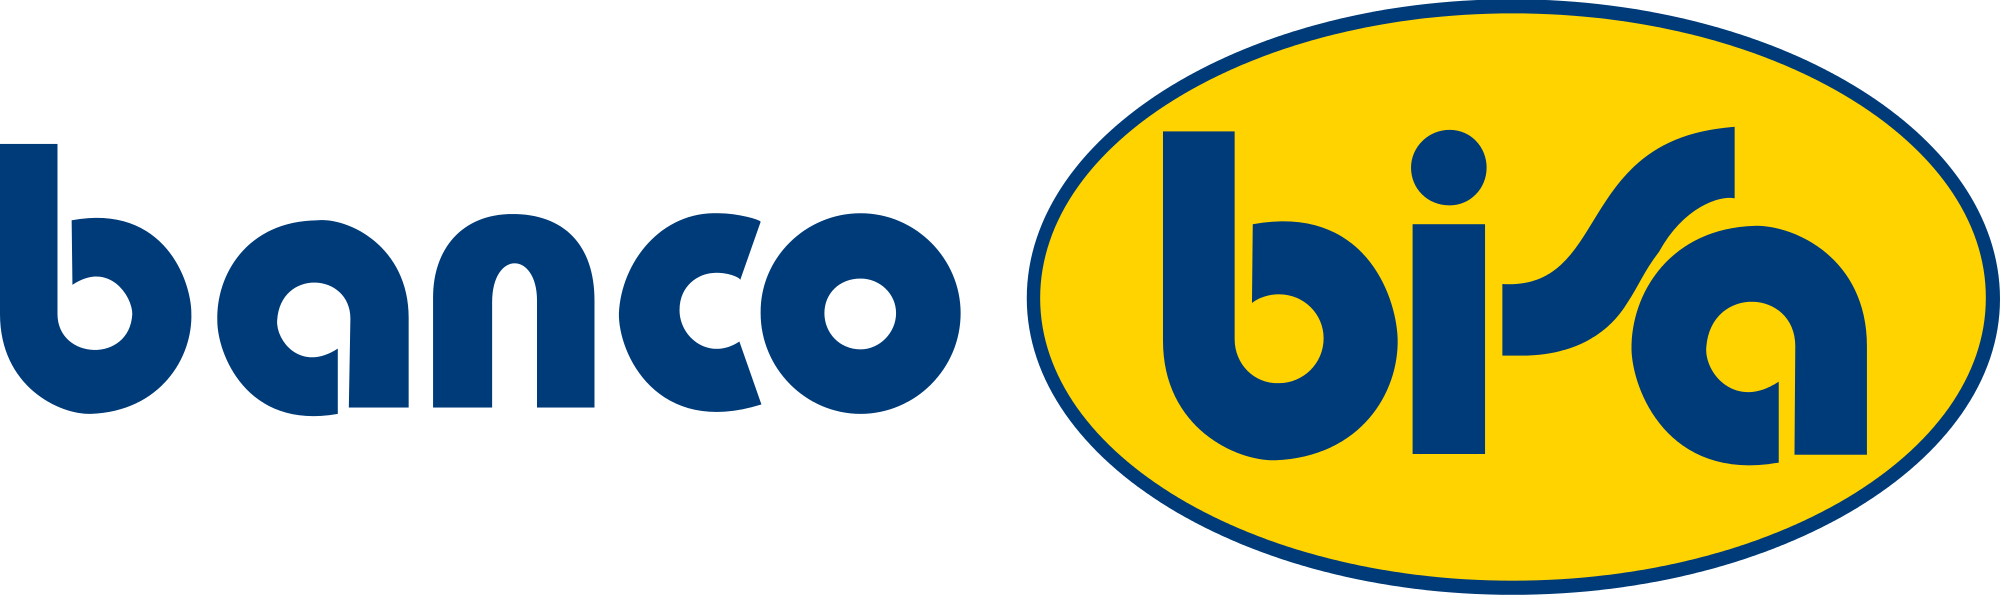 Banco BISA Logo photo - 1